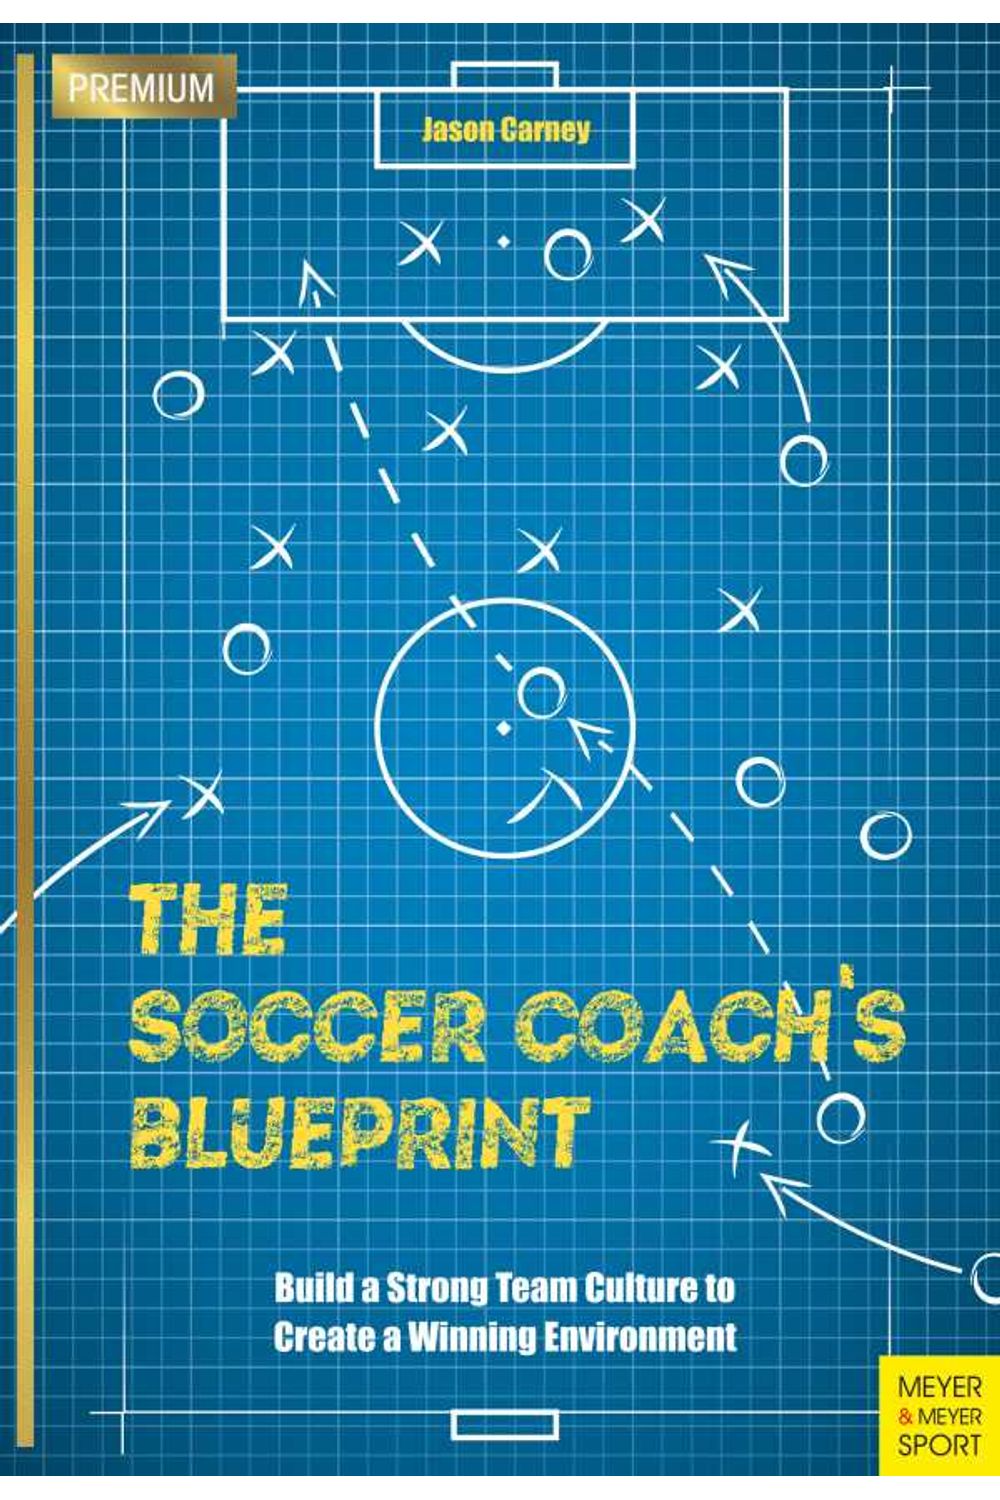 bw-the-soccer-coachs-blueprint-meyer-meyer-sport-9781782554653